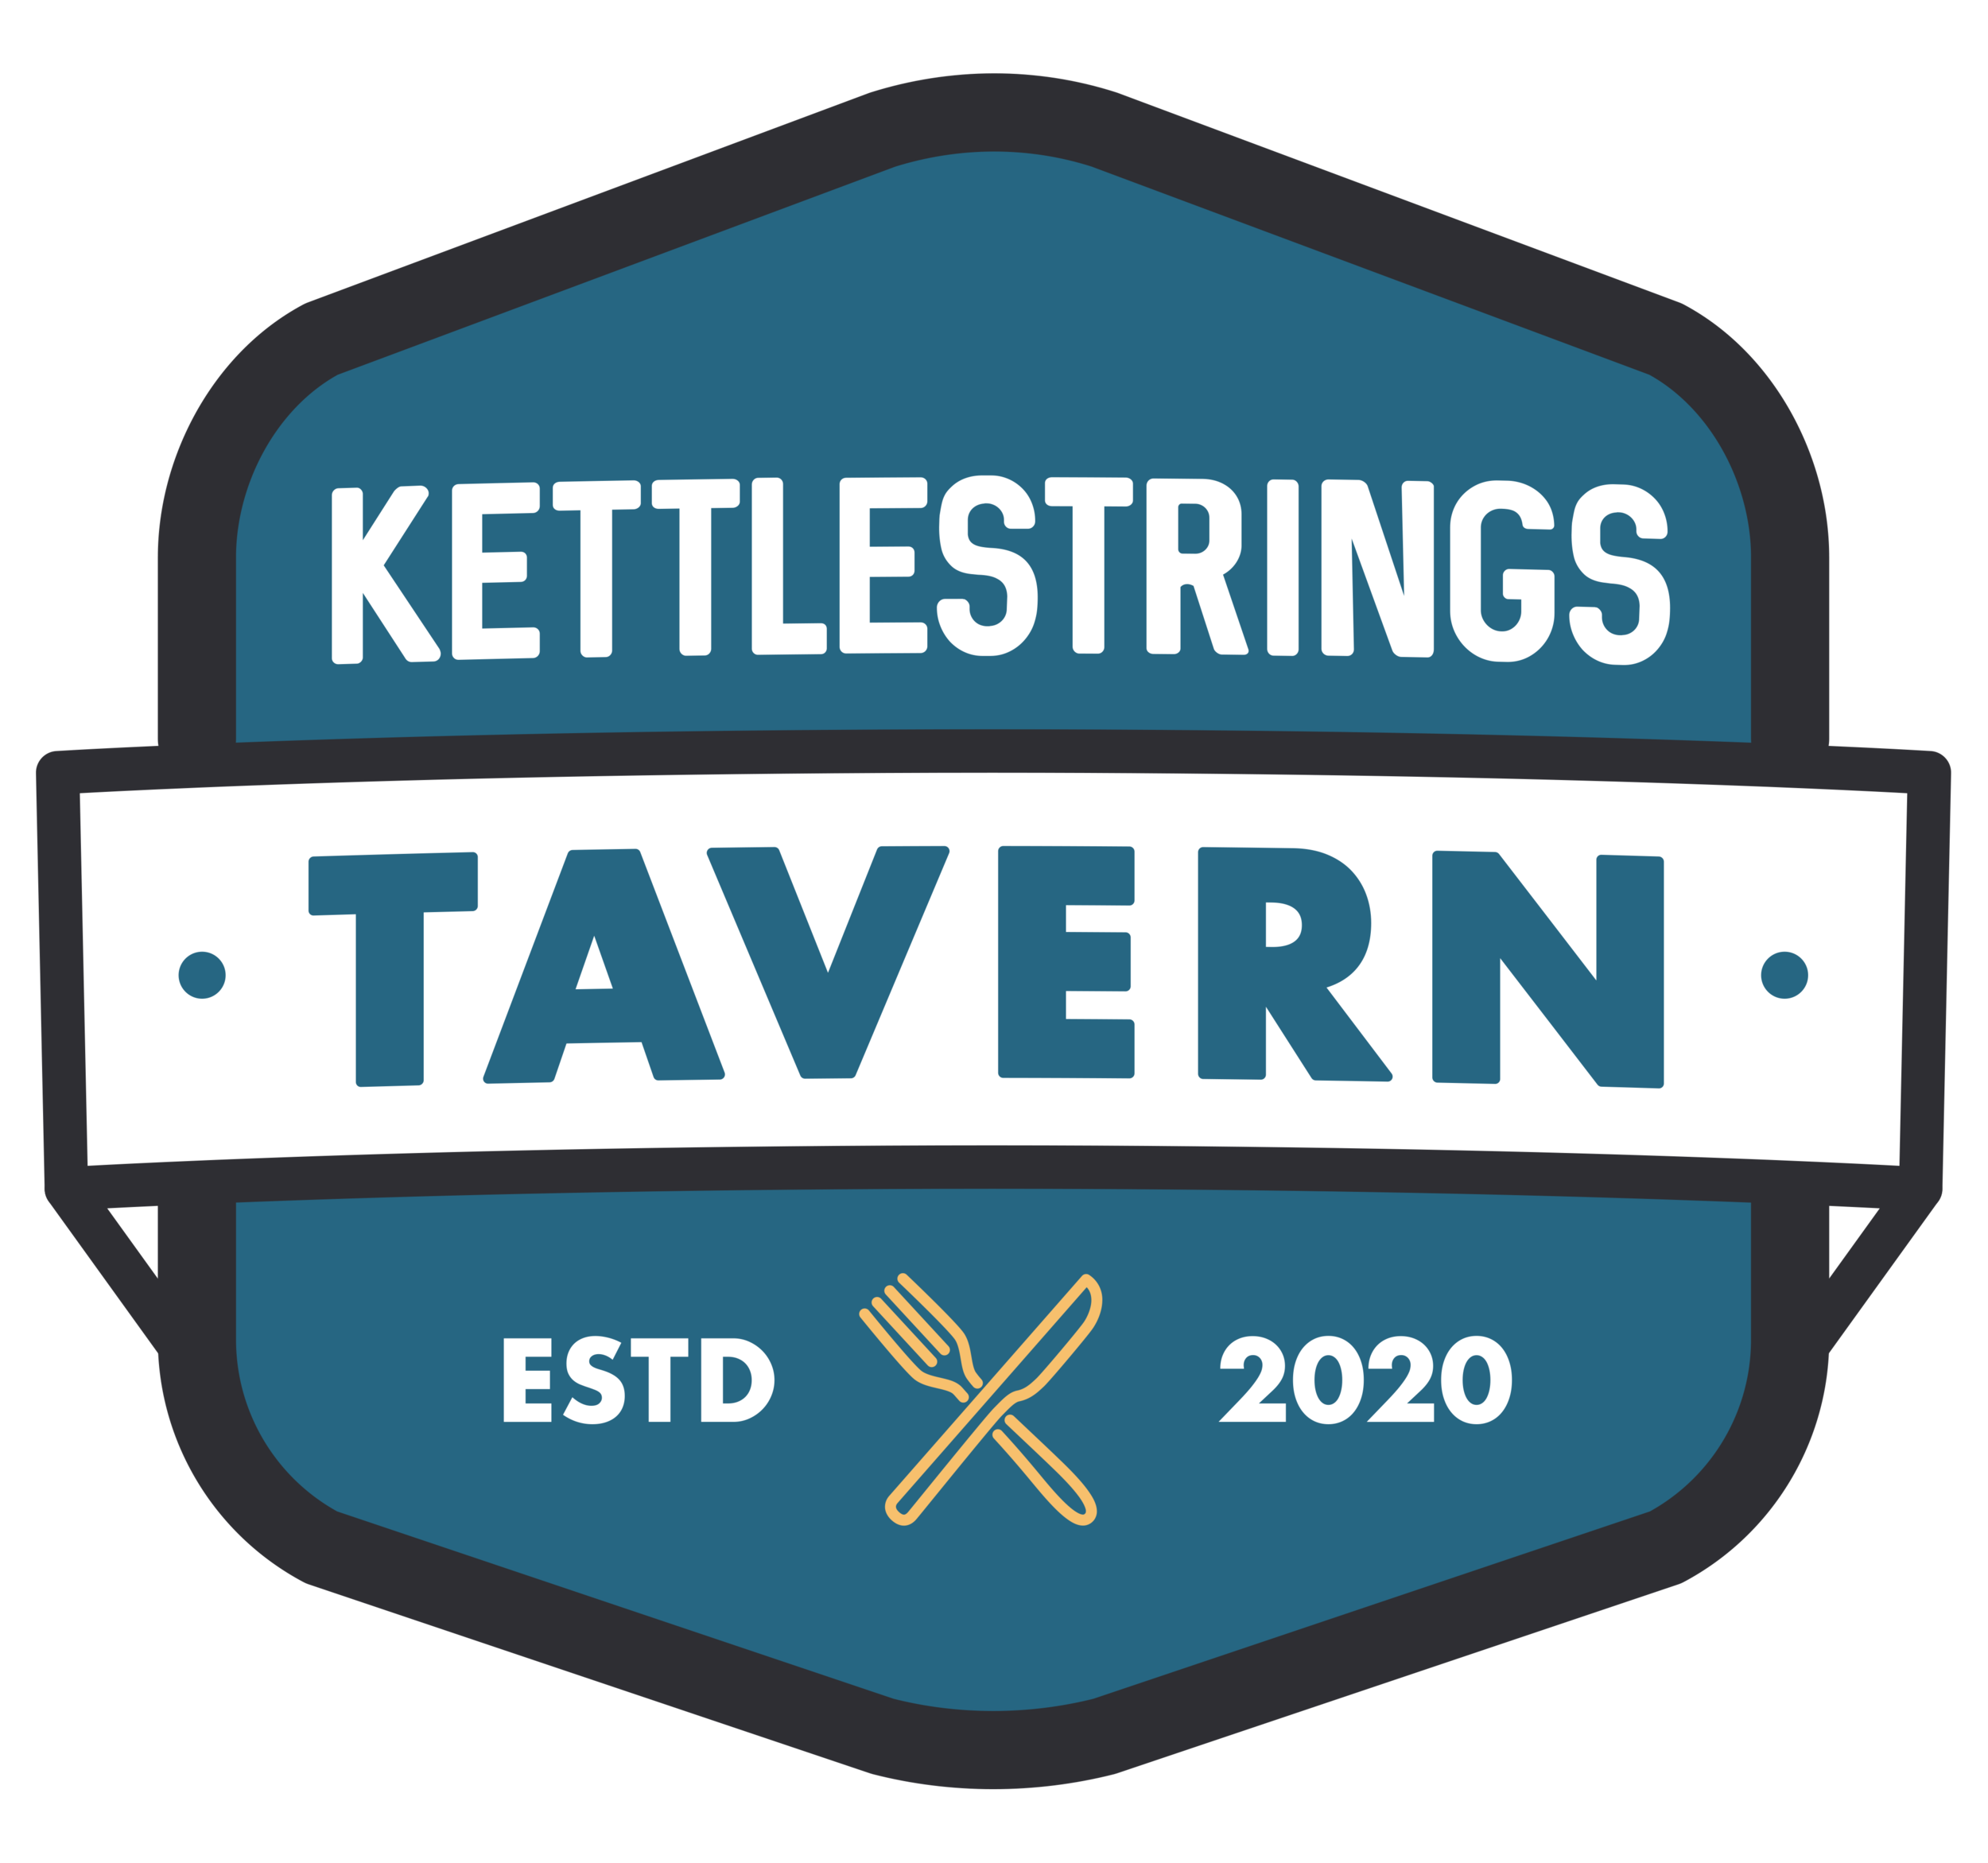 Kettlestrings Tavern